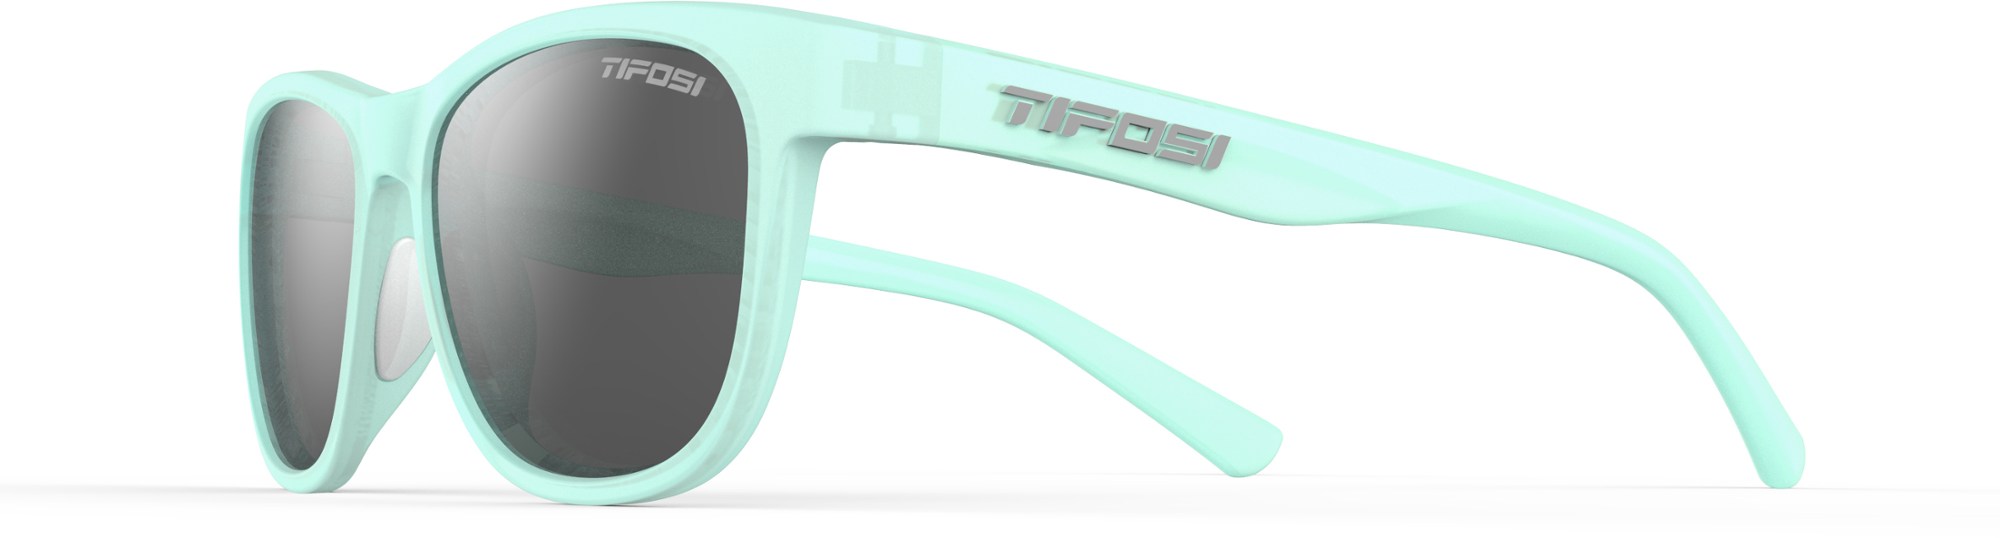 цена Поляризованные солнцезащитные очки Swank Tifosi, синий